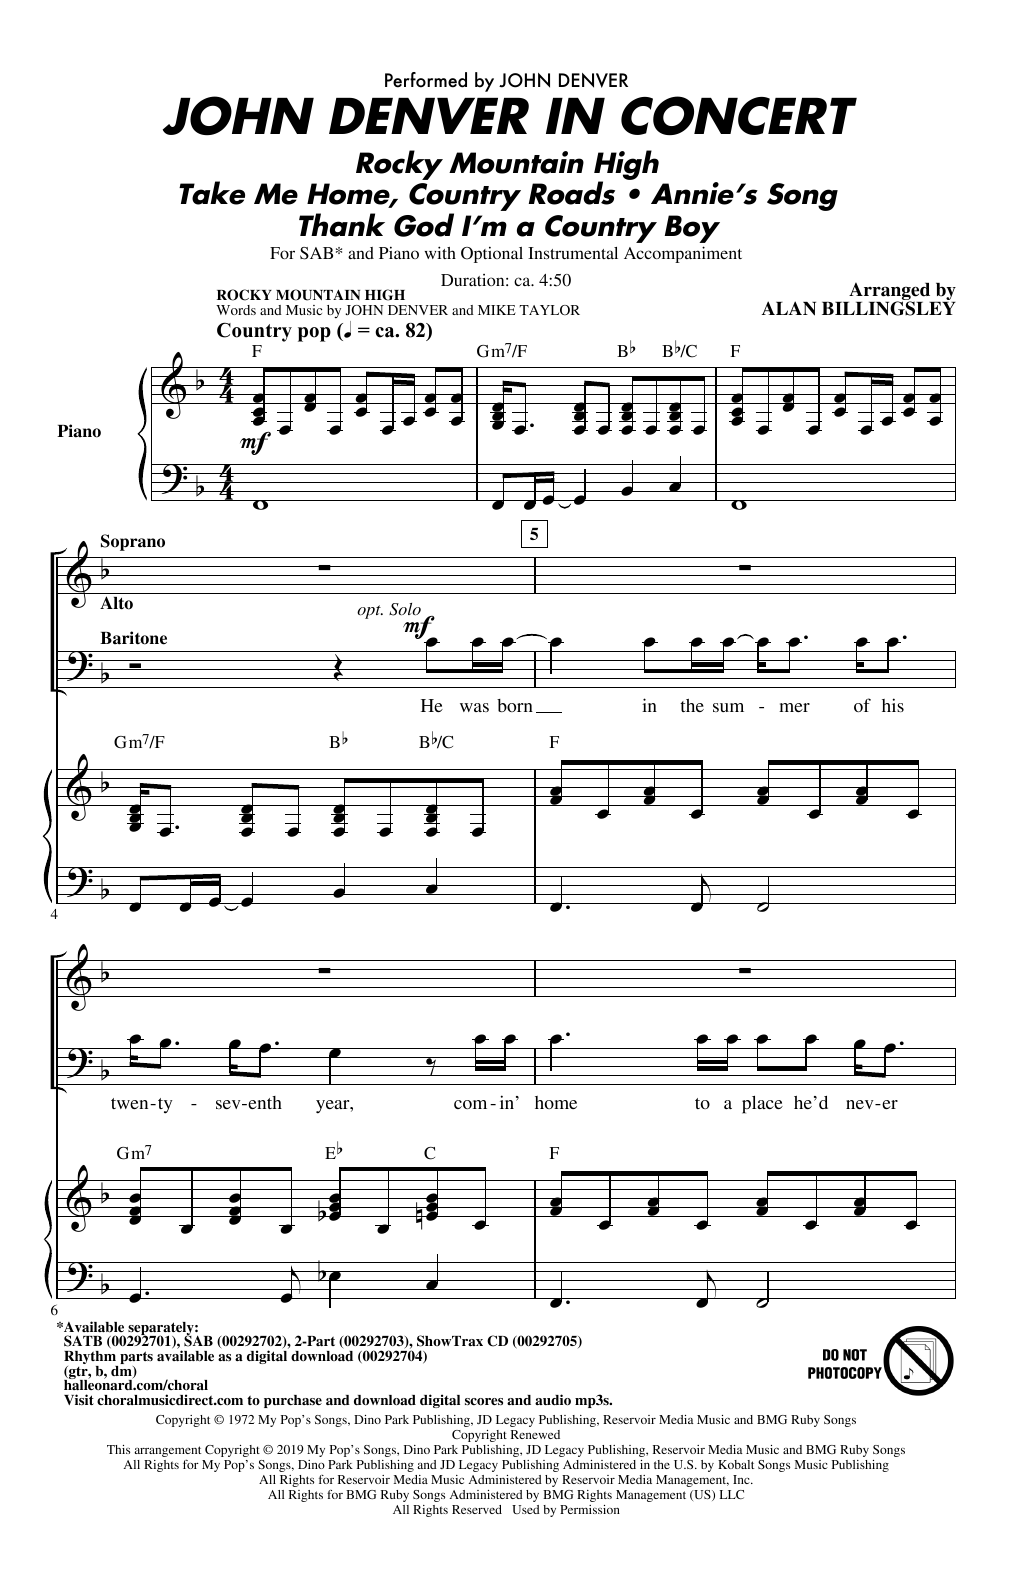 John Denver John Denver In Concert (arr. Alan Billingsley) Sheet Music Notes & Chords for SAB Choir - Download or Print PDF